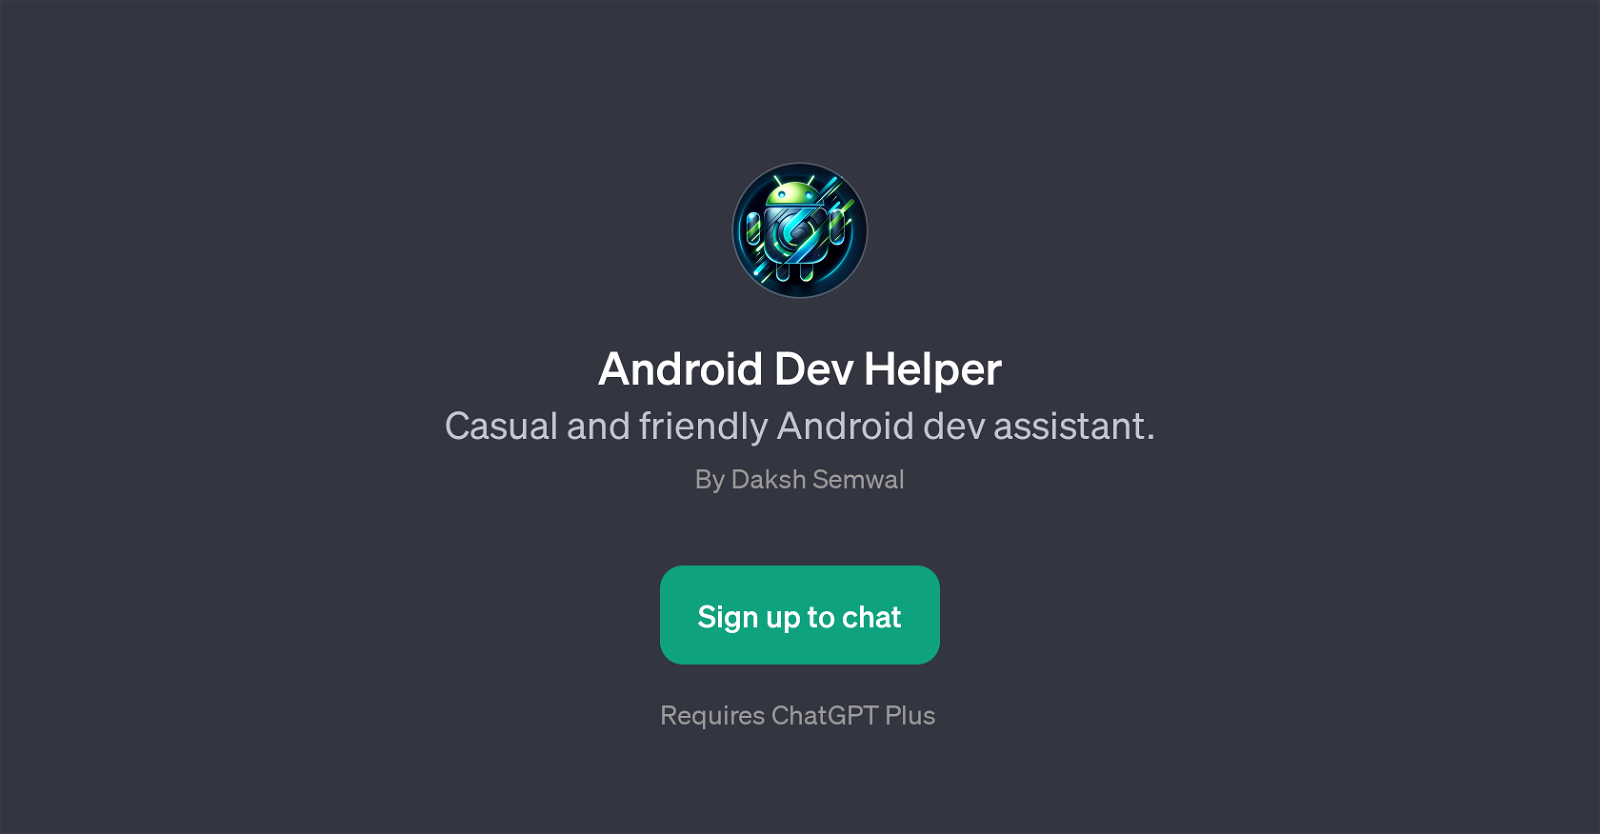 Android Dev Helper website